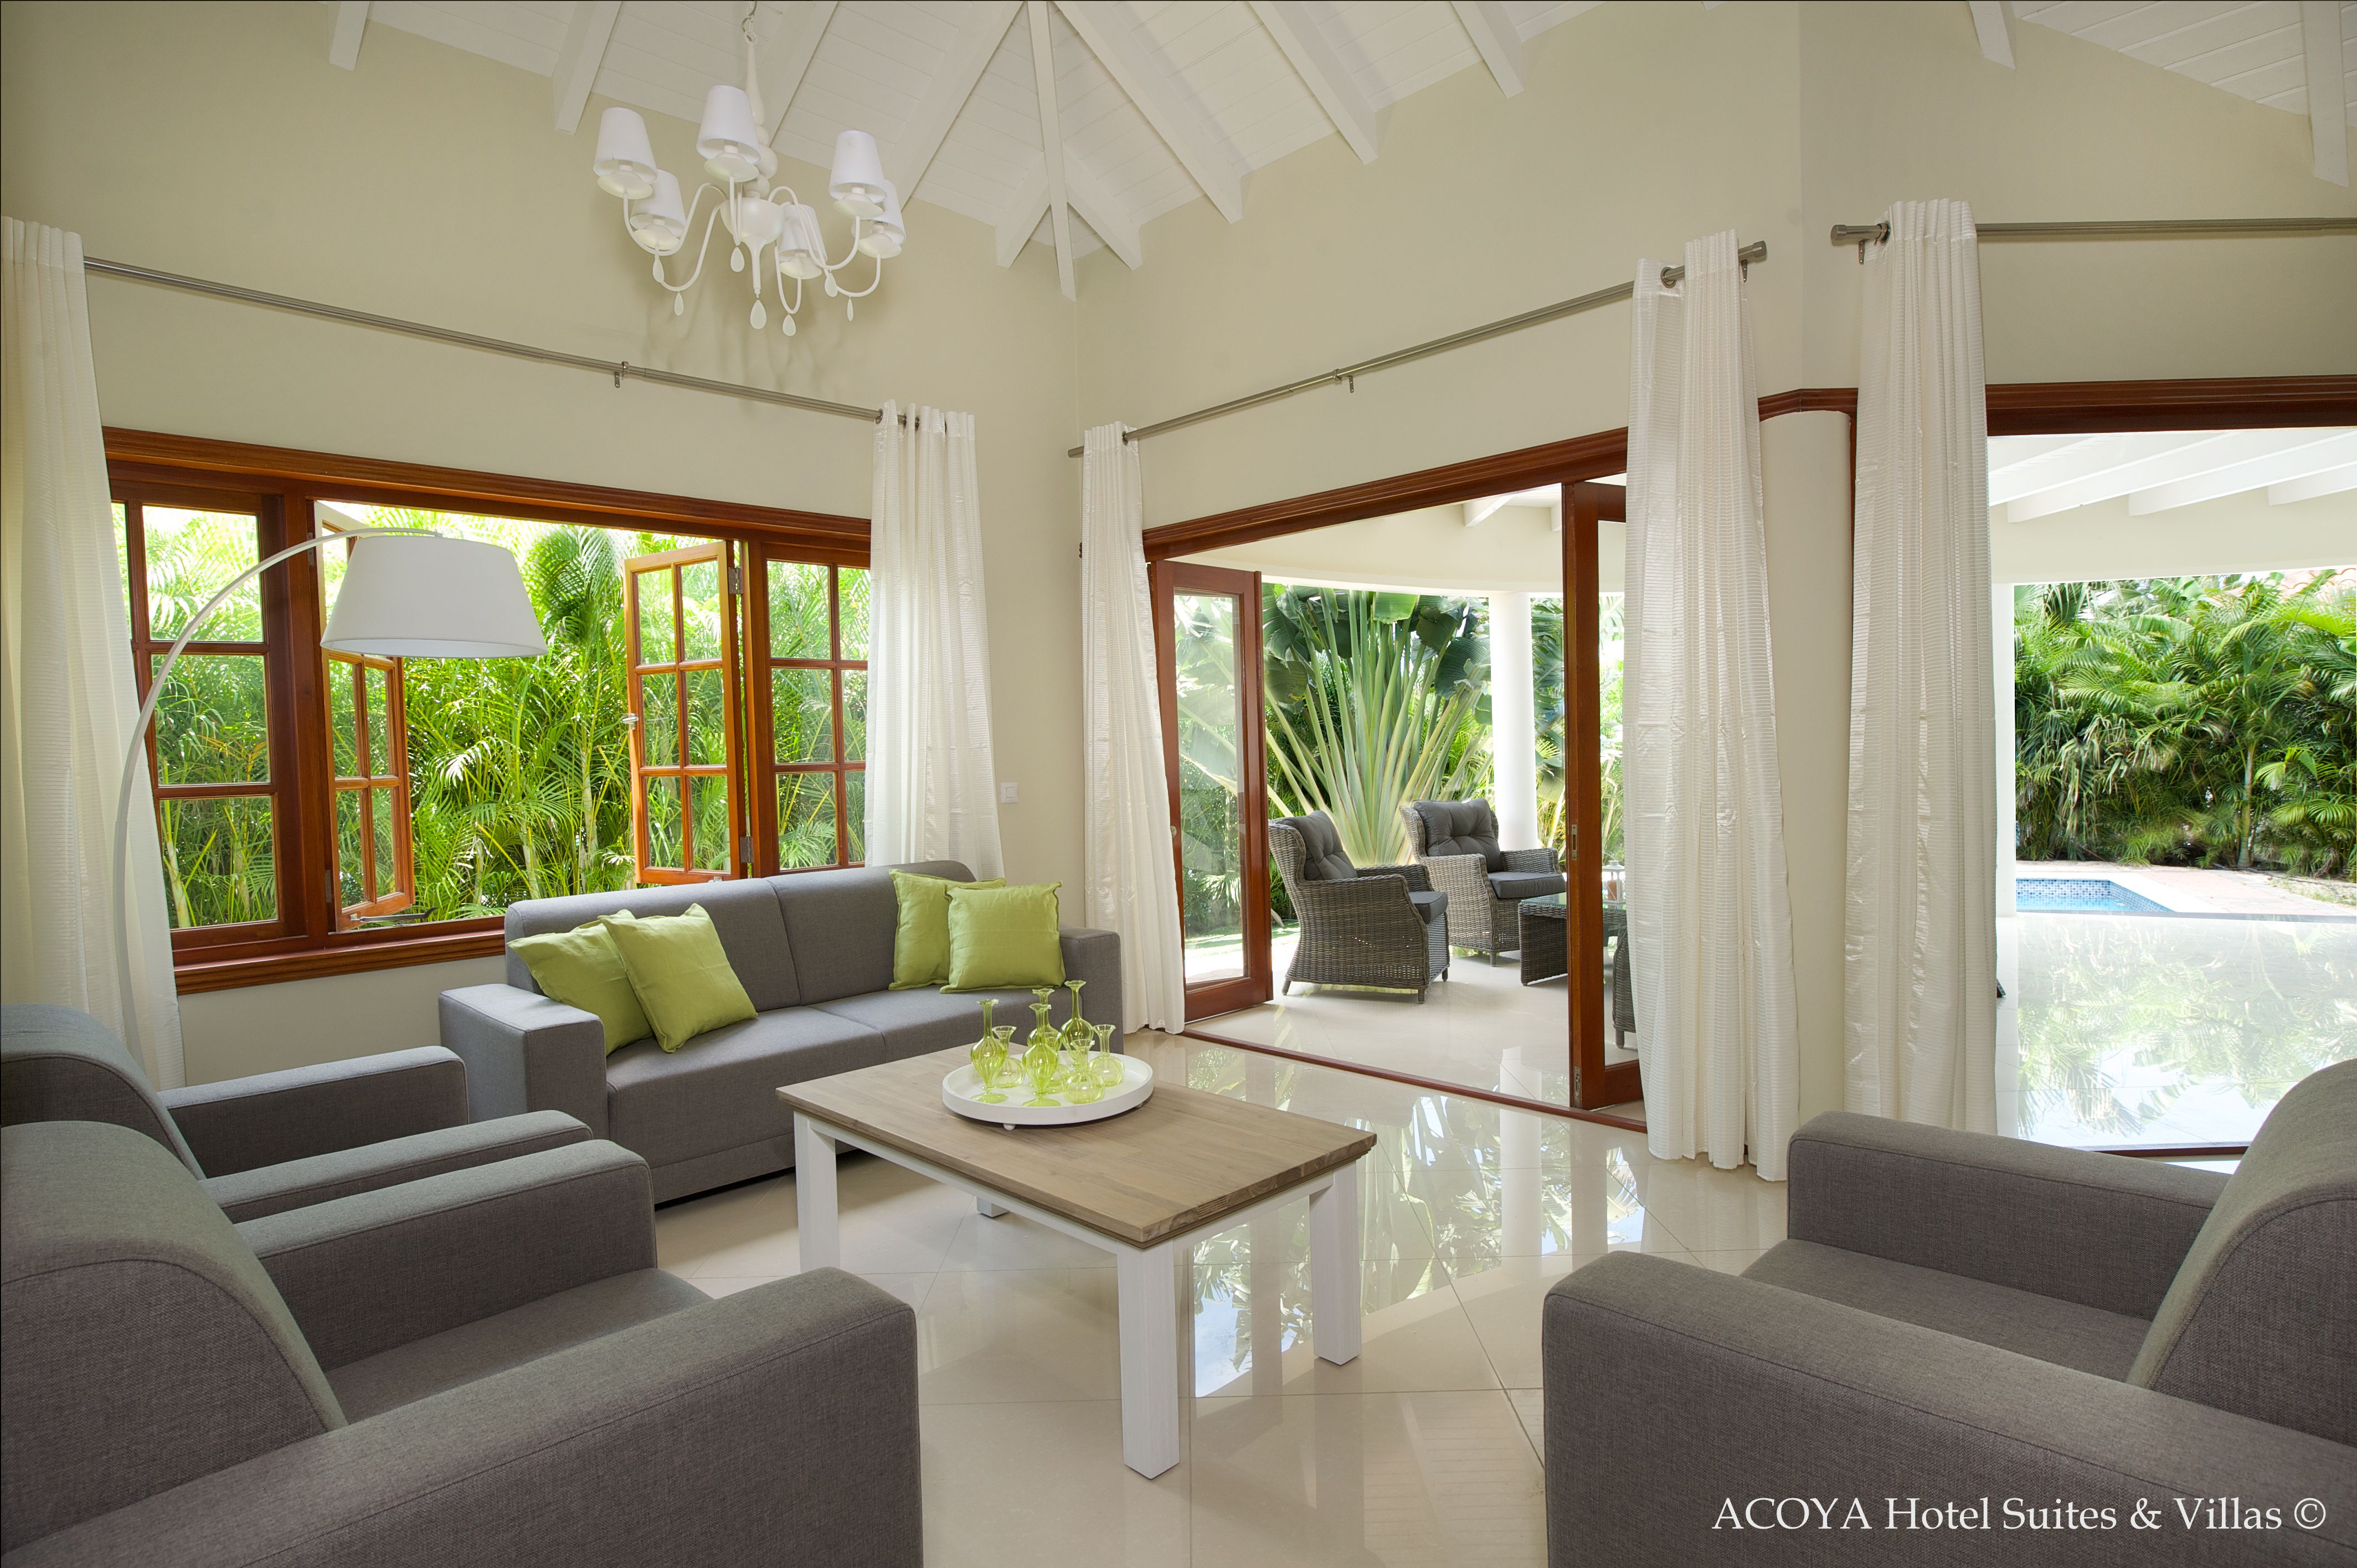 Acoya Hotel Suites & Villas